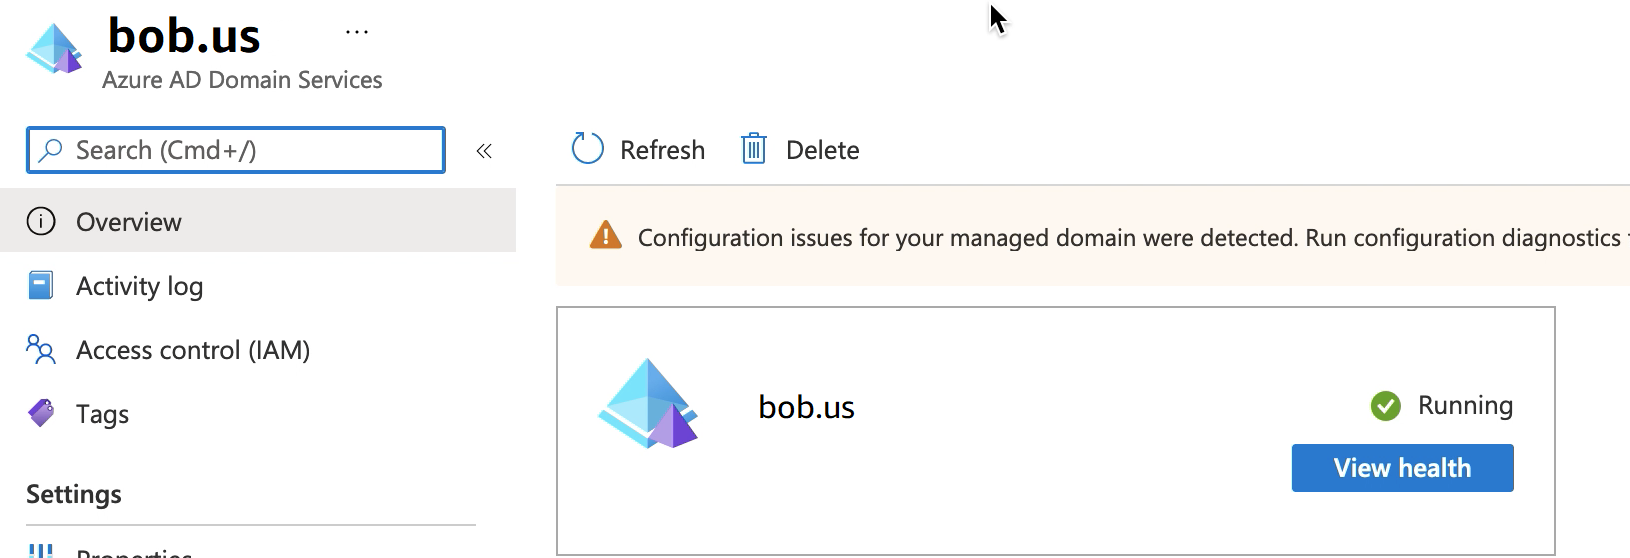 Azure AD ドメインサービス画面には、実行中のリソースグループ bob.us が表示されます。